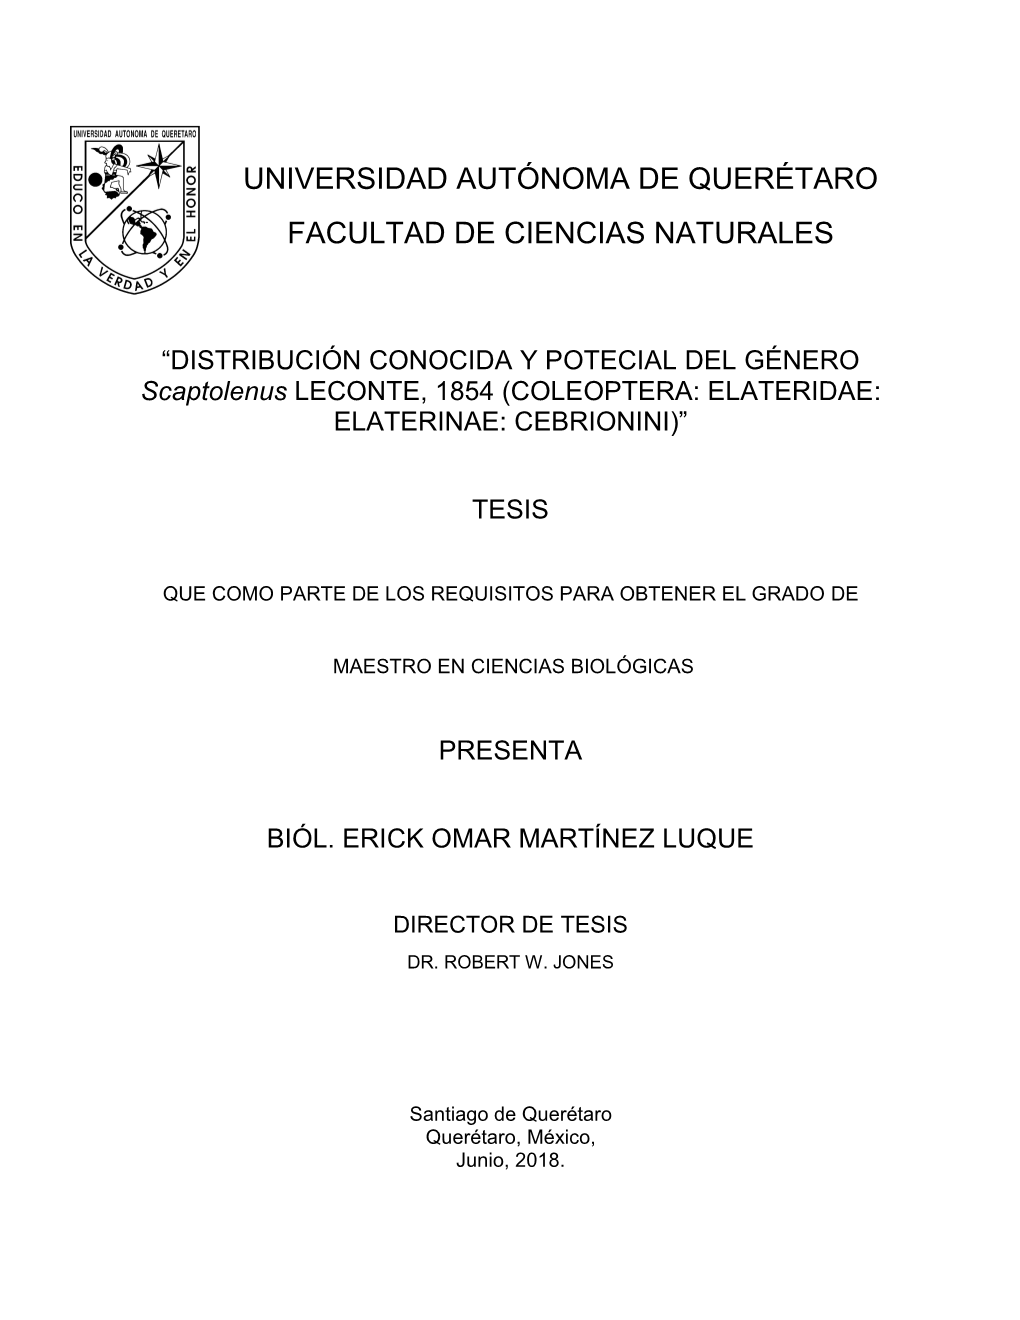 Universidad Autónoma De Querétaro Facultad De Ciencias Naturales